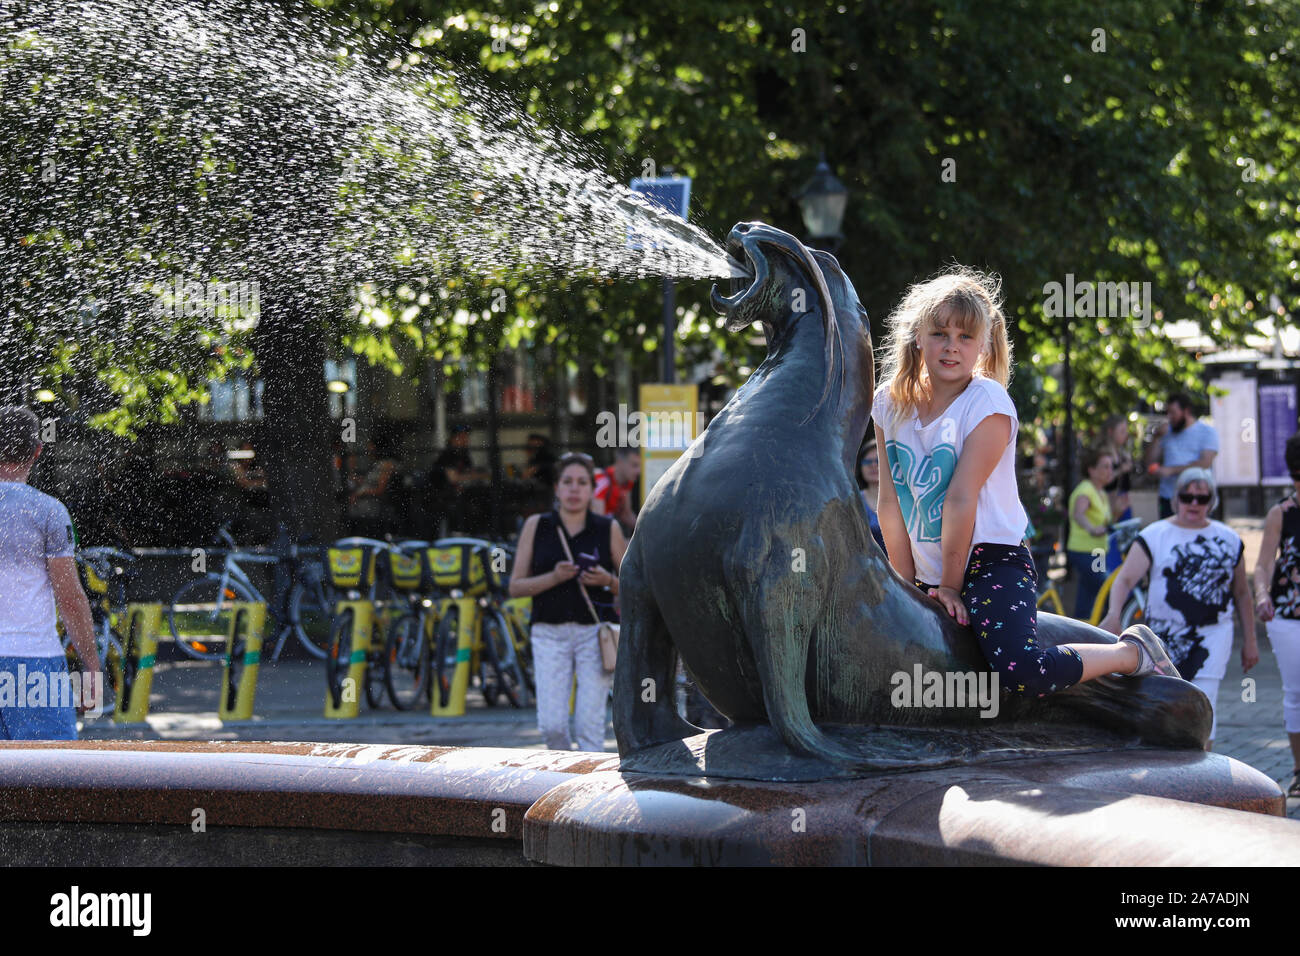 Jeune fille assise sur un jet d'eau de mer lion statue Havis Amanda à Helsinki, Finlande Banque D'Images